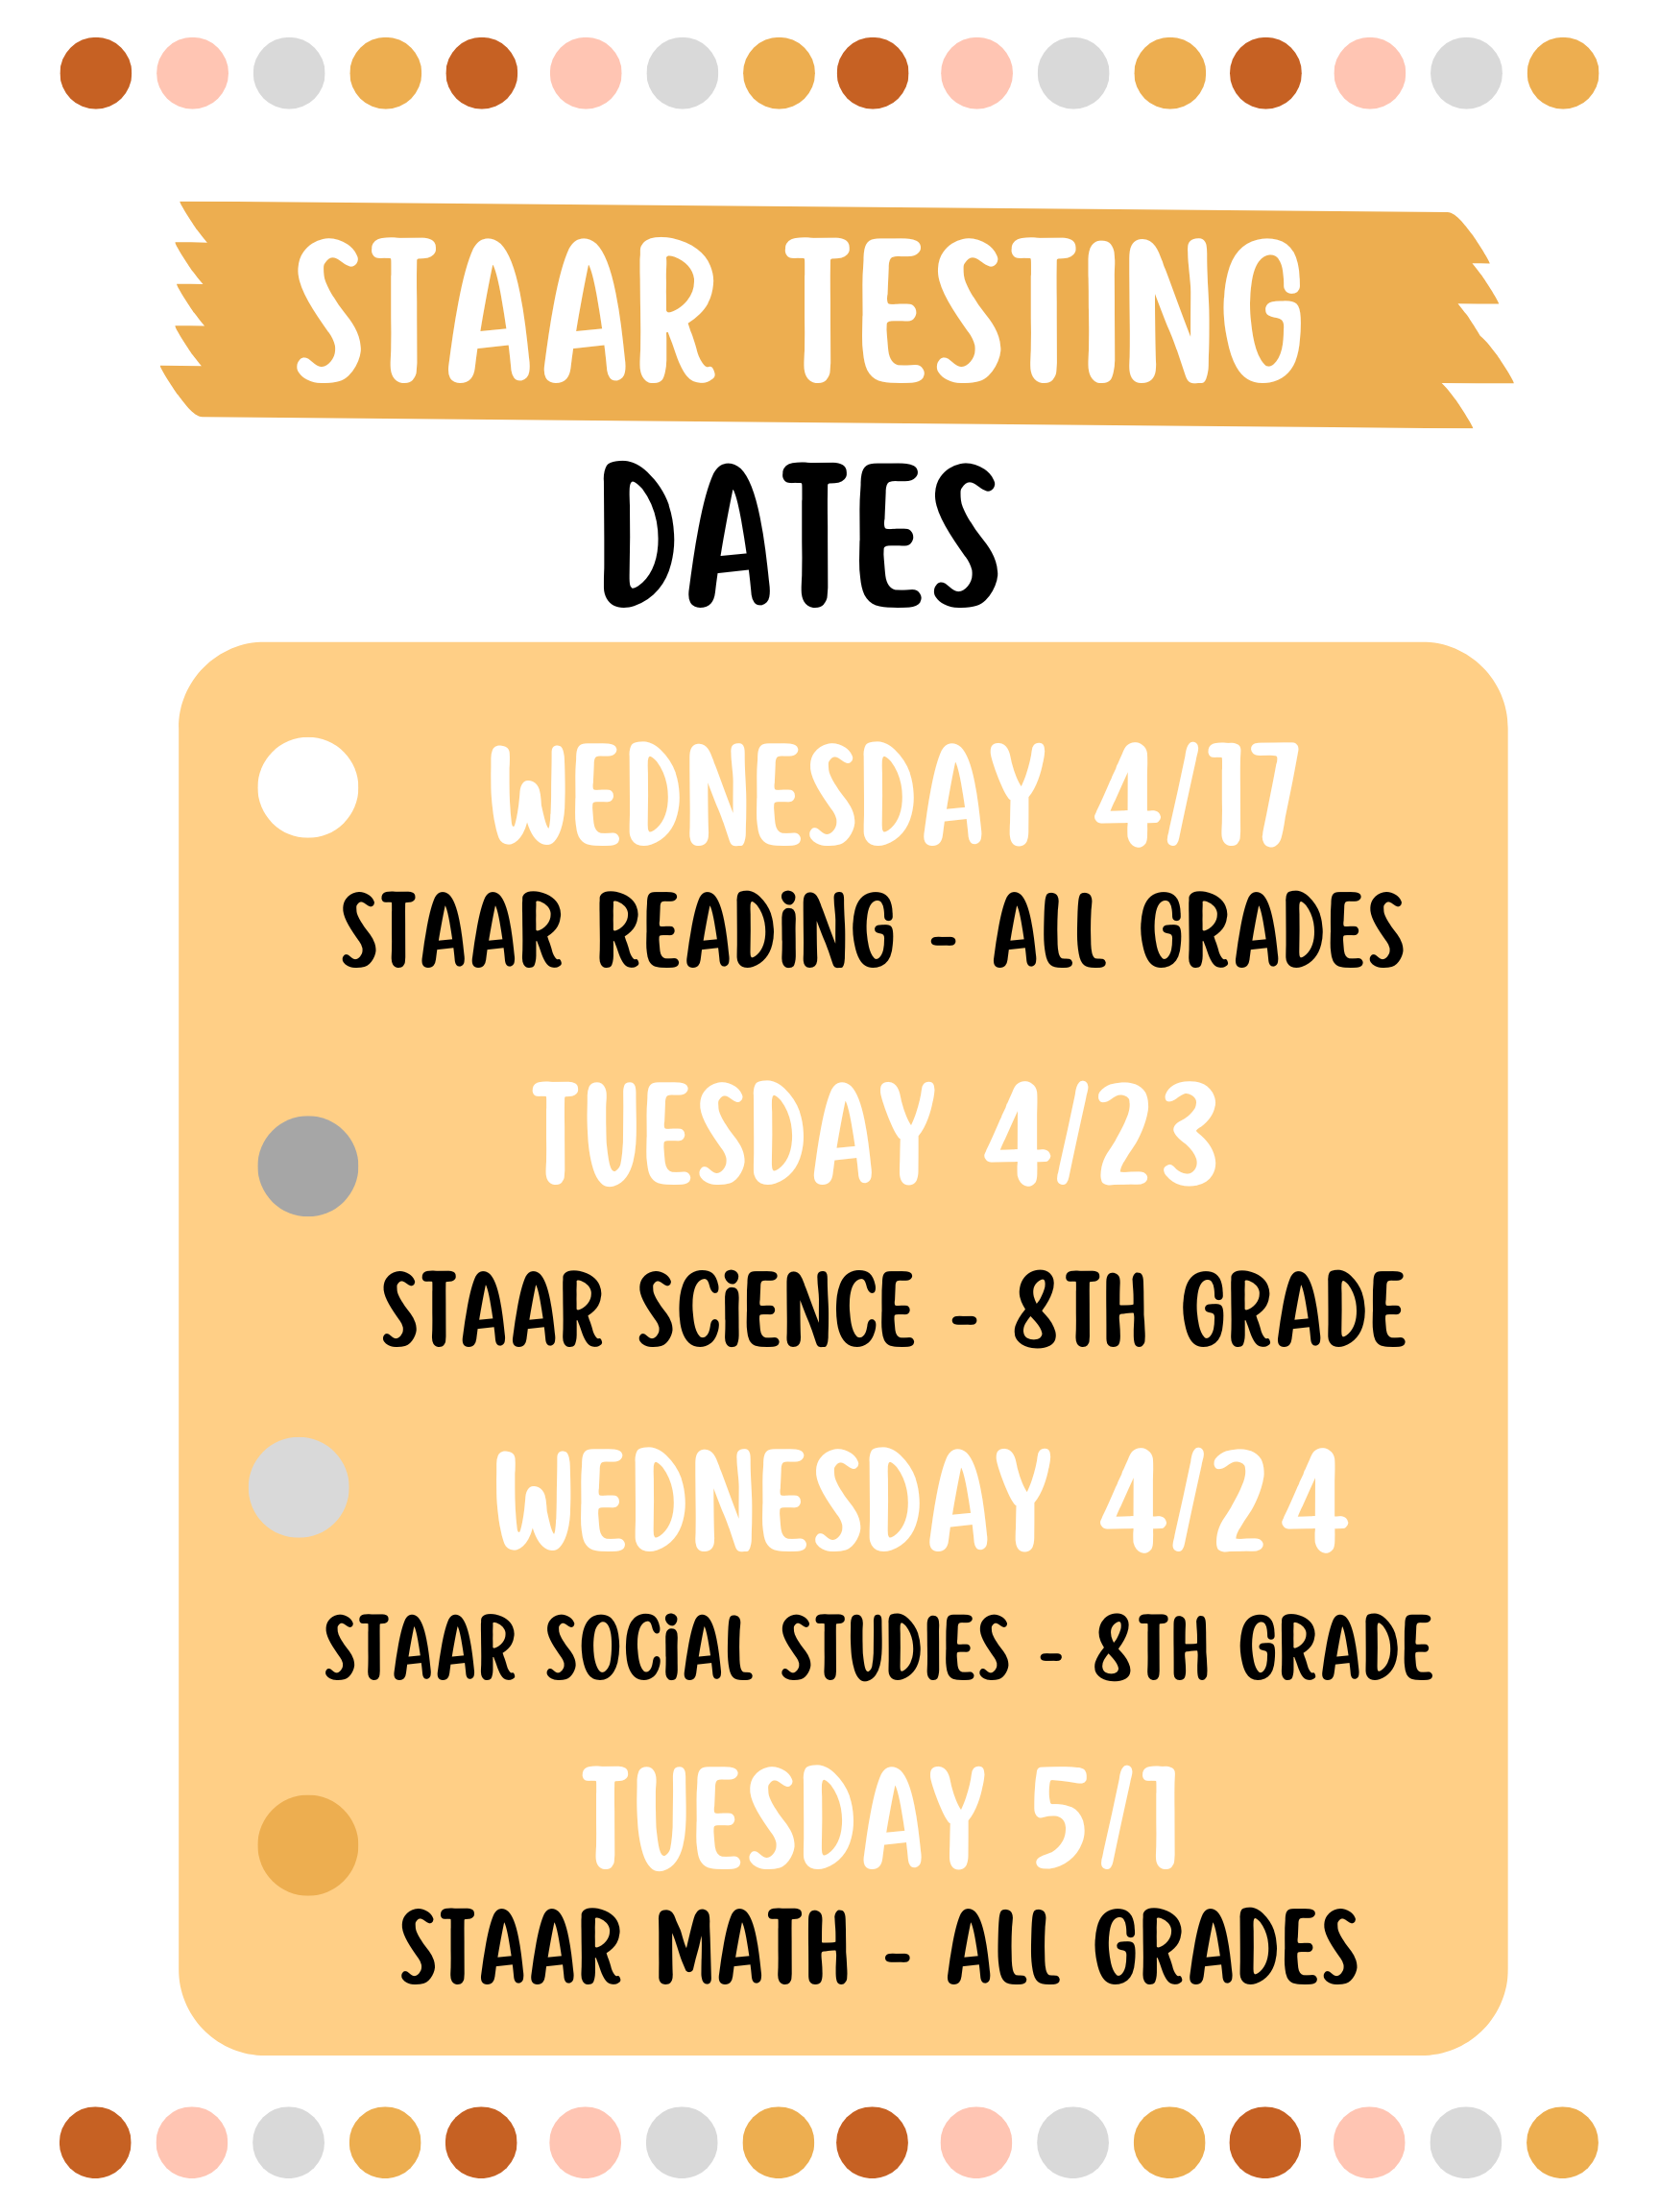 STAAR Testing Dates flyer